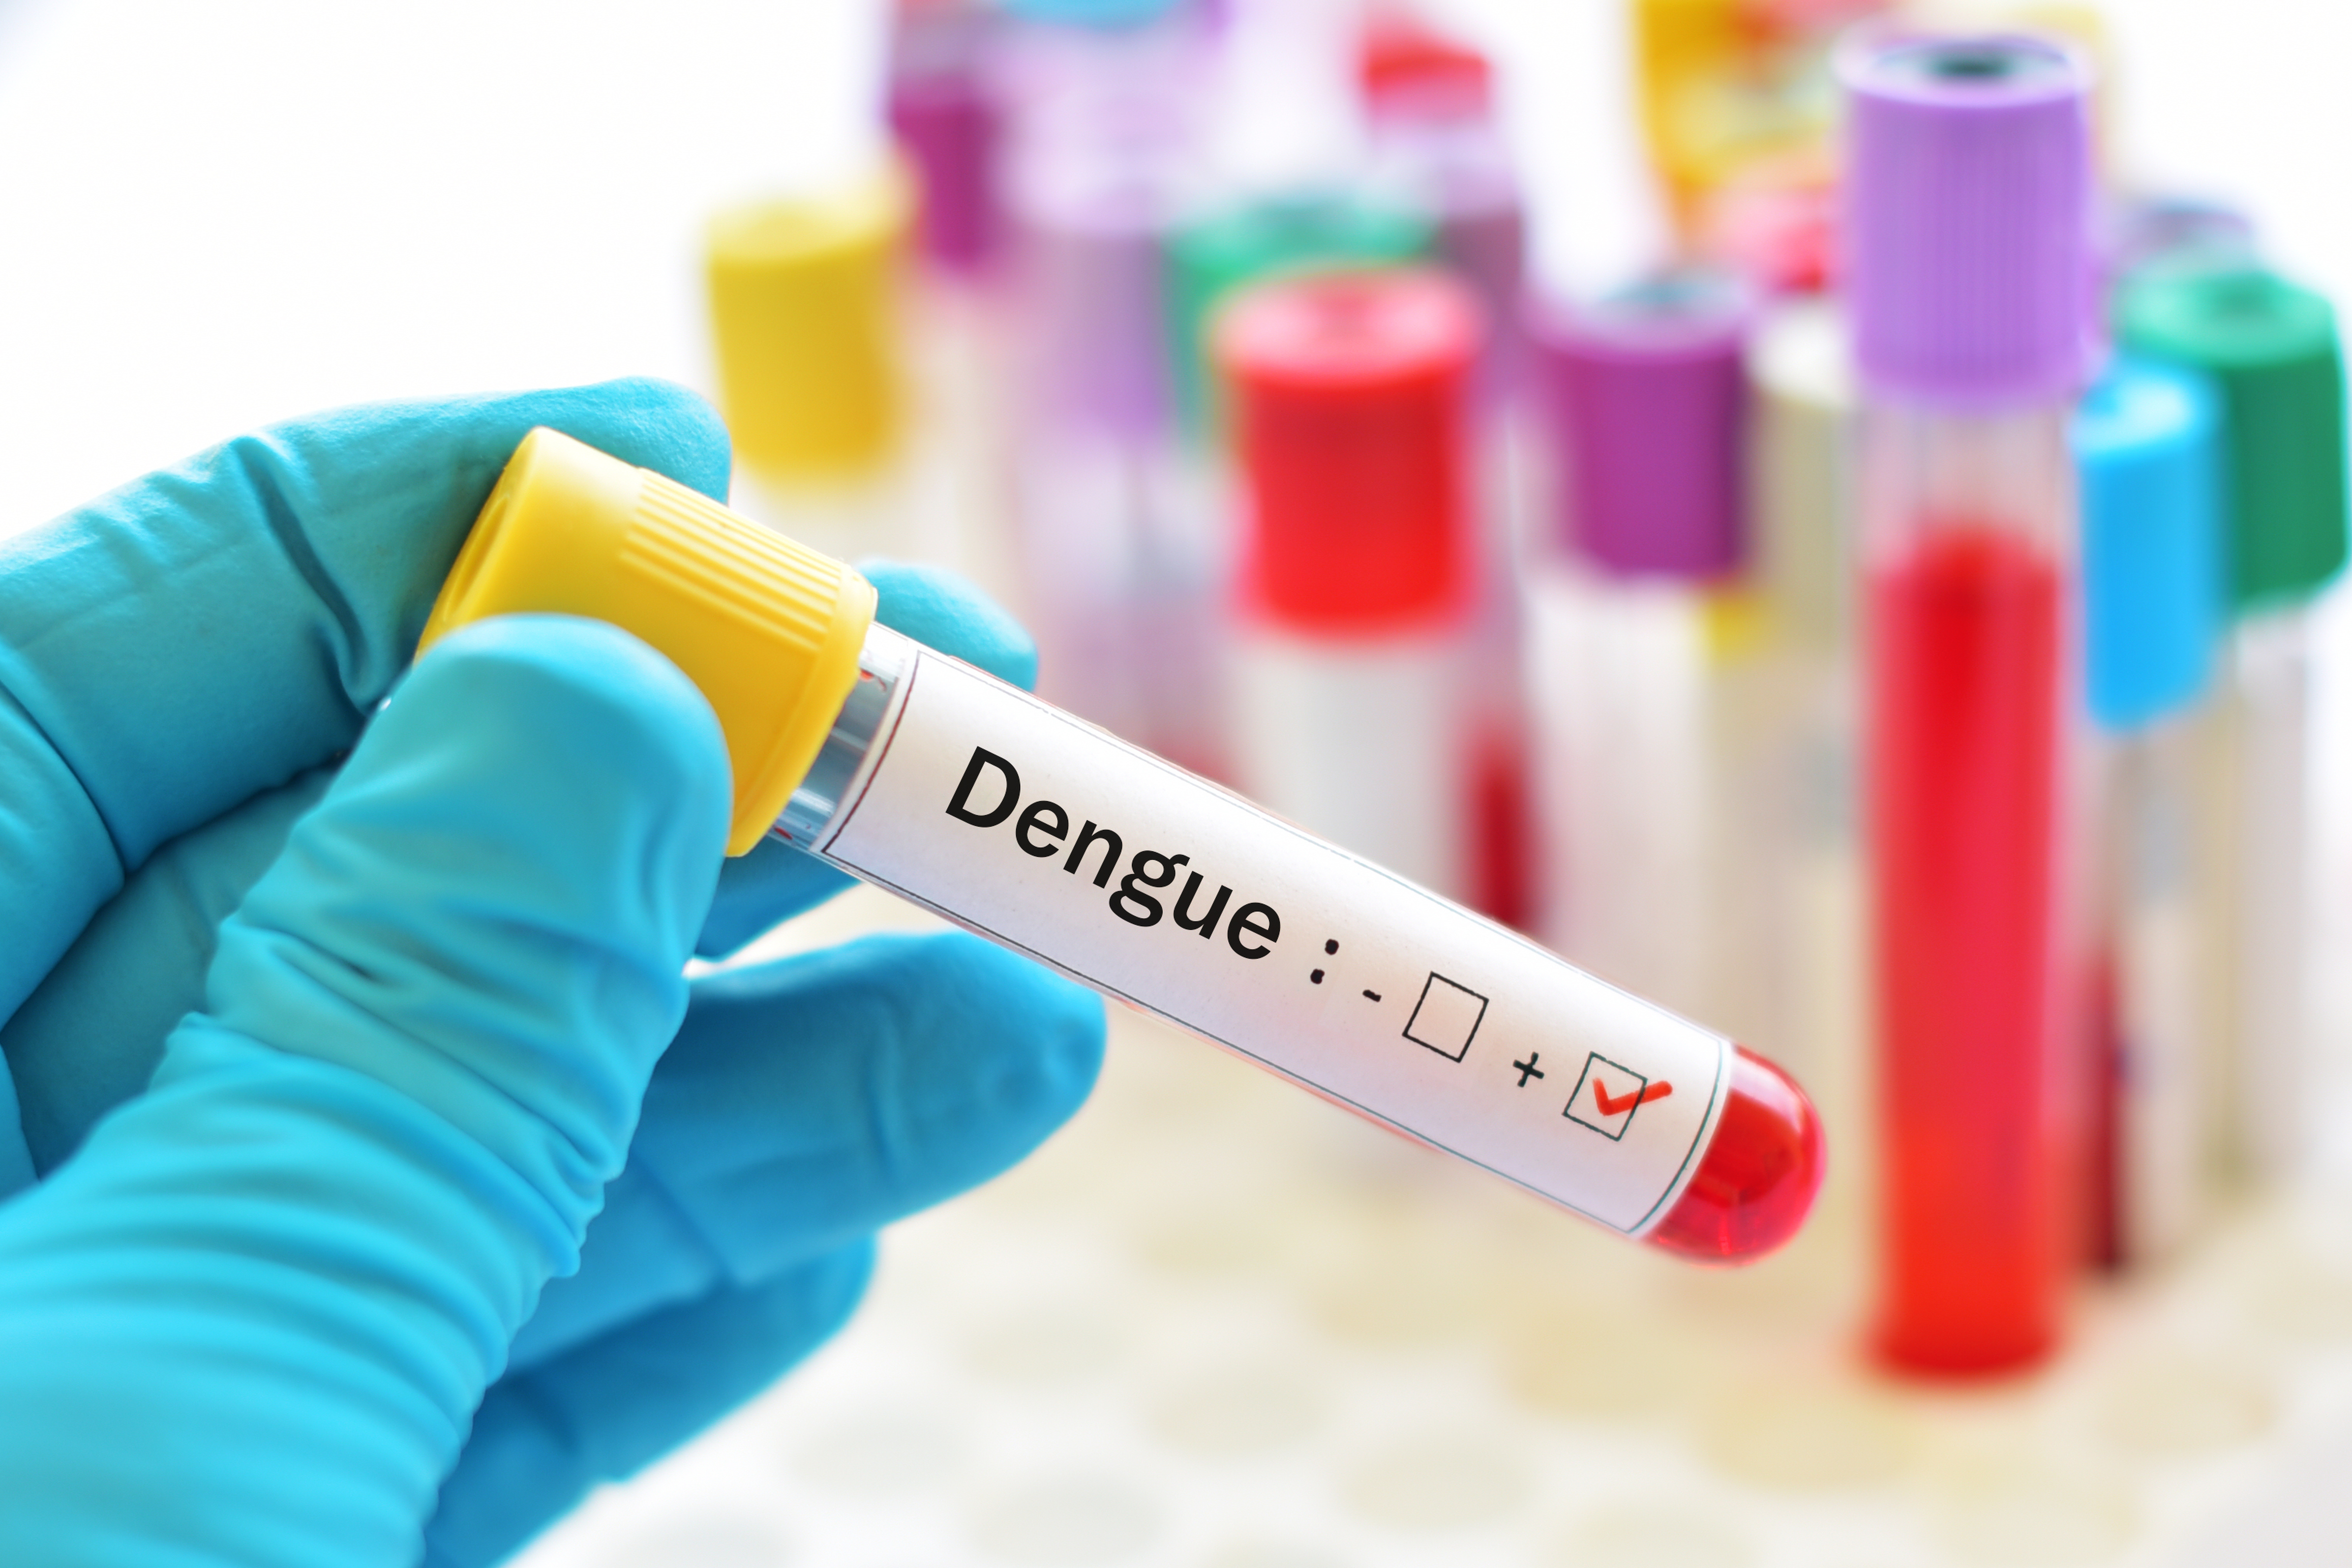 Un cas de transmission de la dengue par voie sexuelle en Espagne